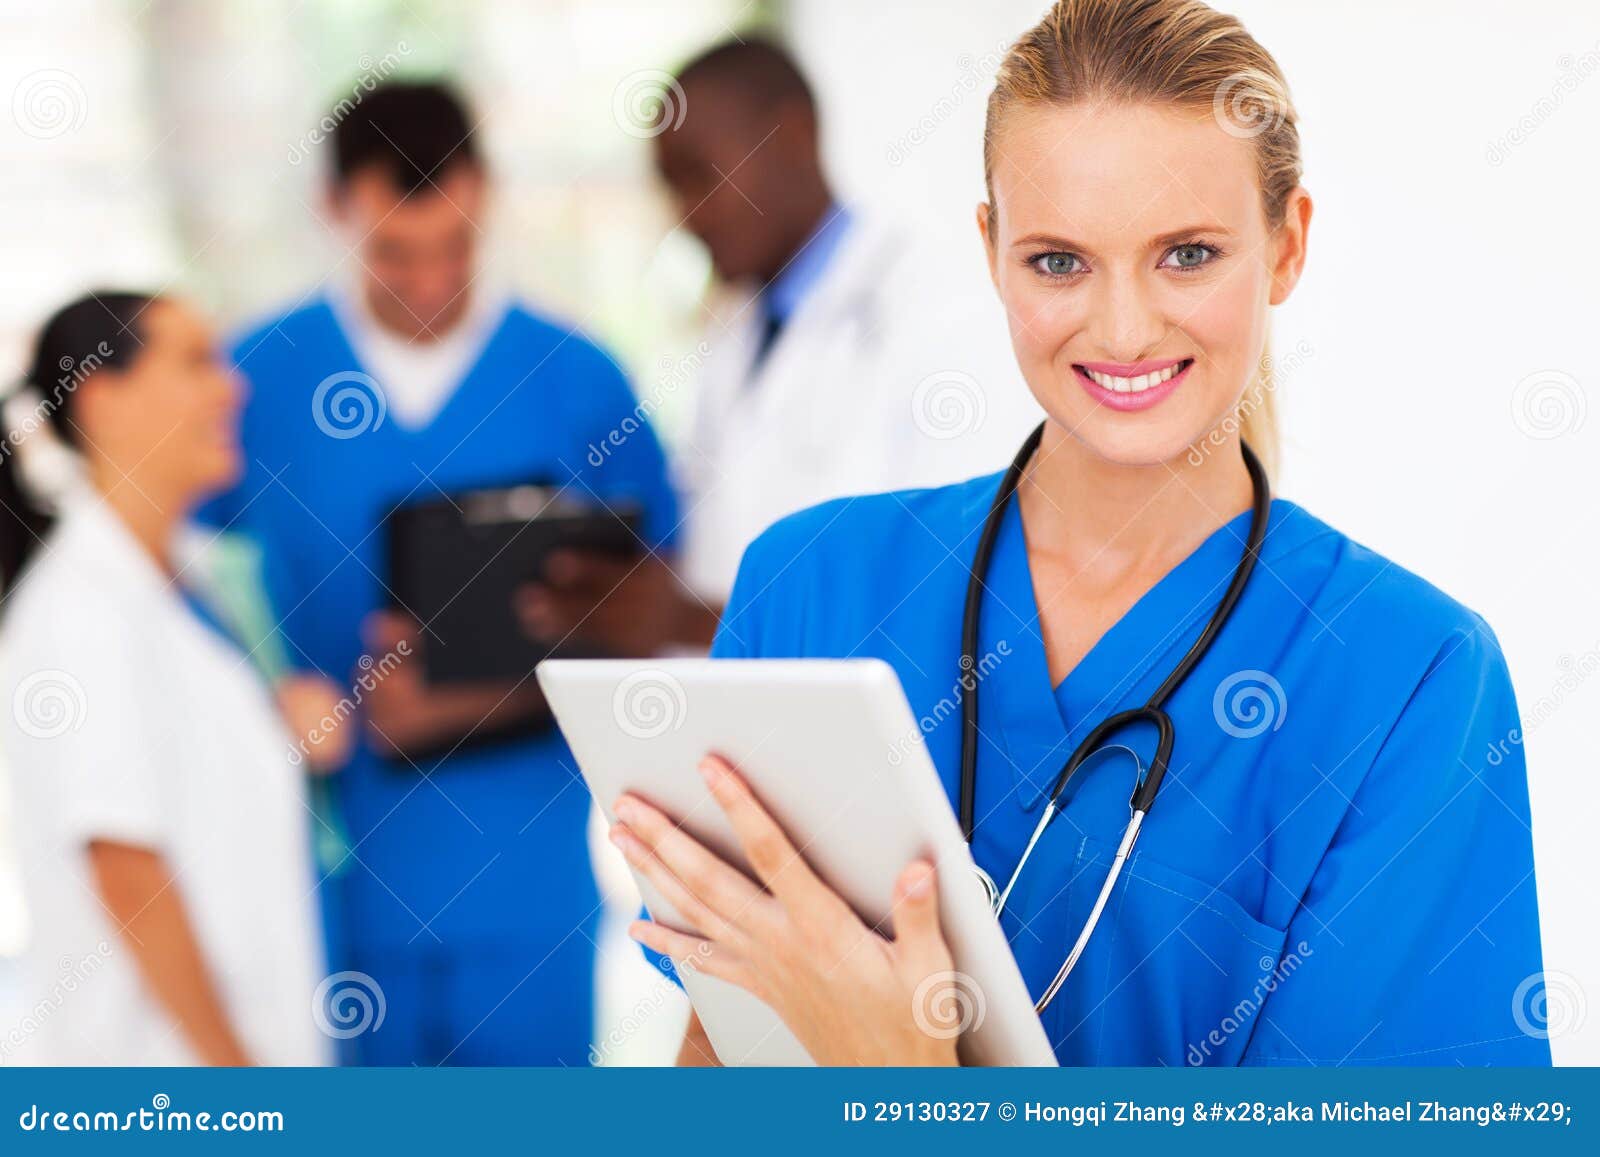 Ordinateur de tablette d'infirmière. Infirmière assez médicale avec l'ordinateur de tablette dans l'hôpital